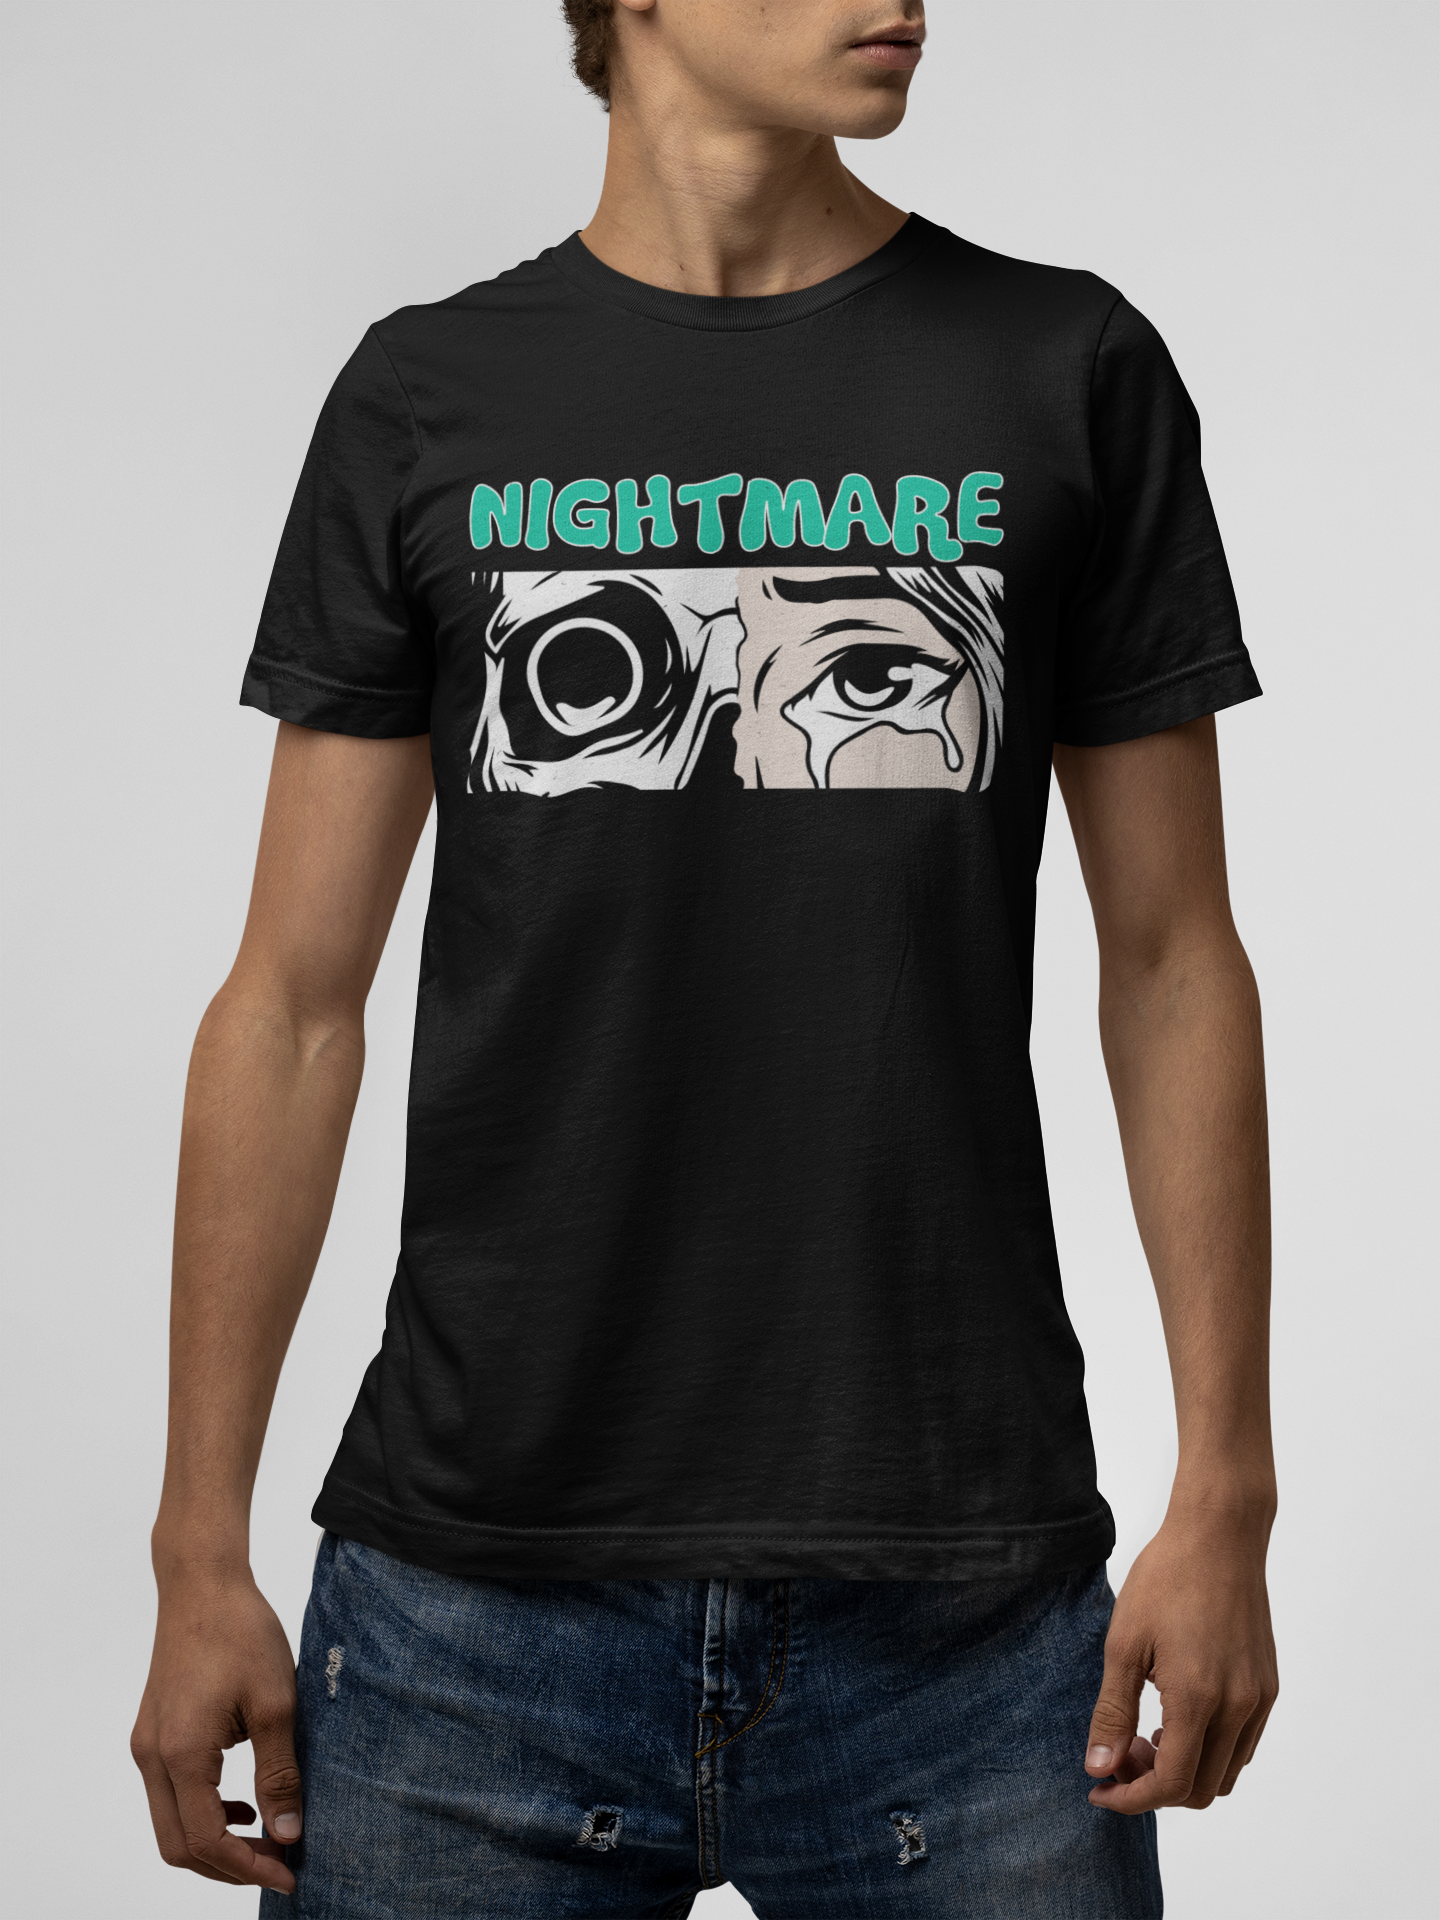 Nightmare Black T-Shirt For Men